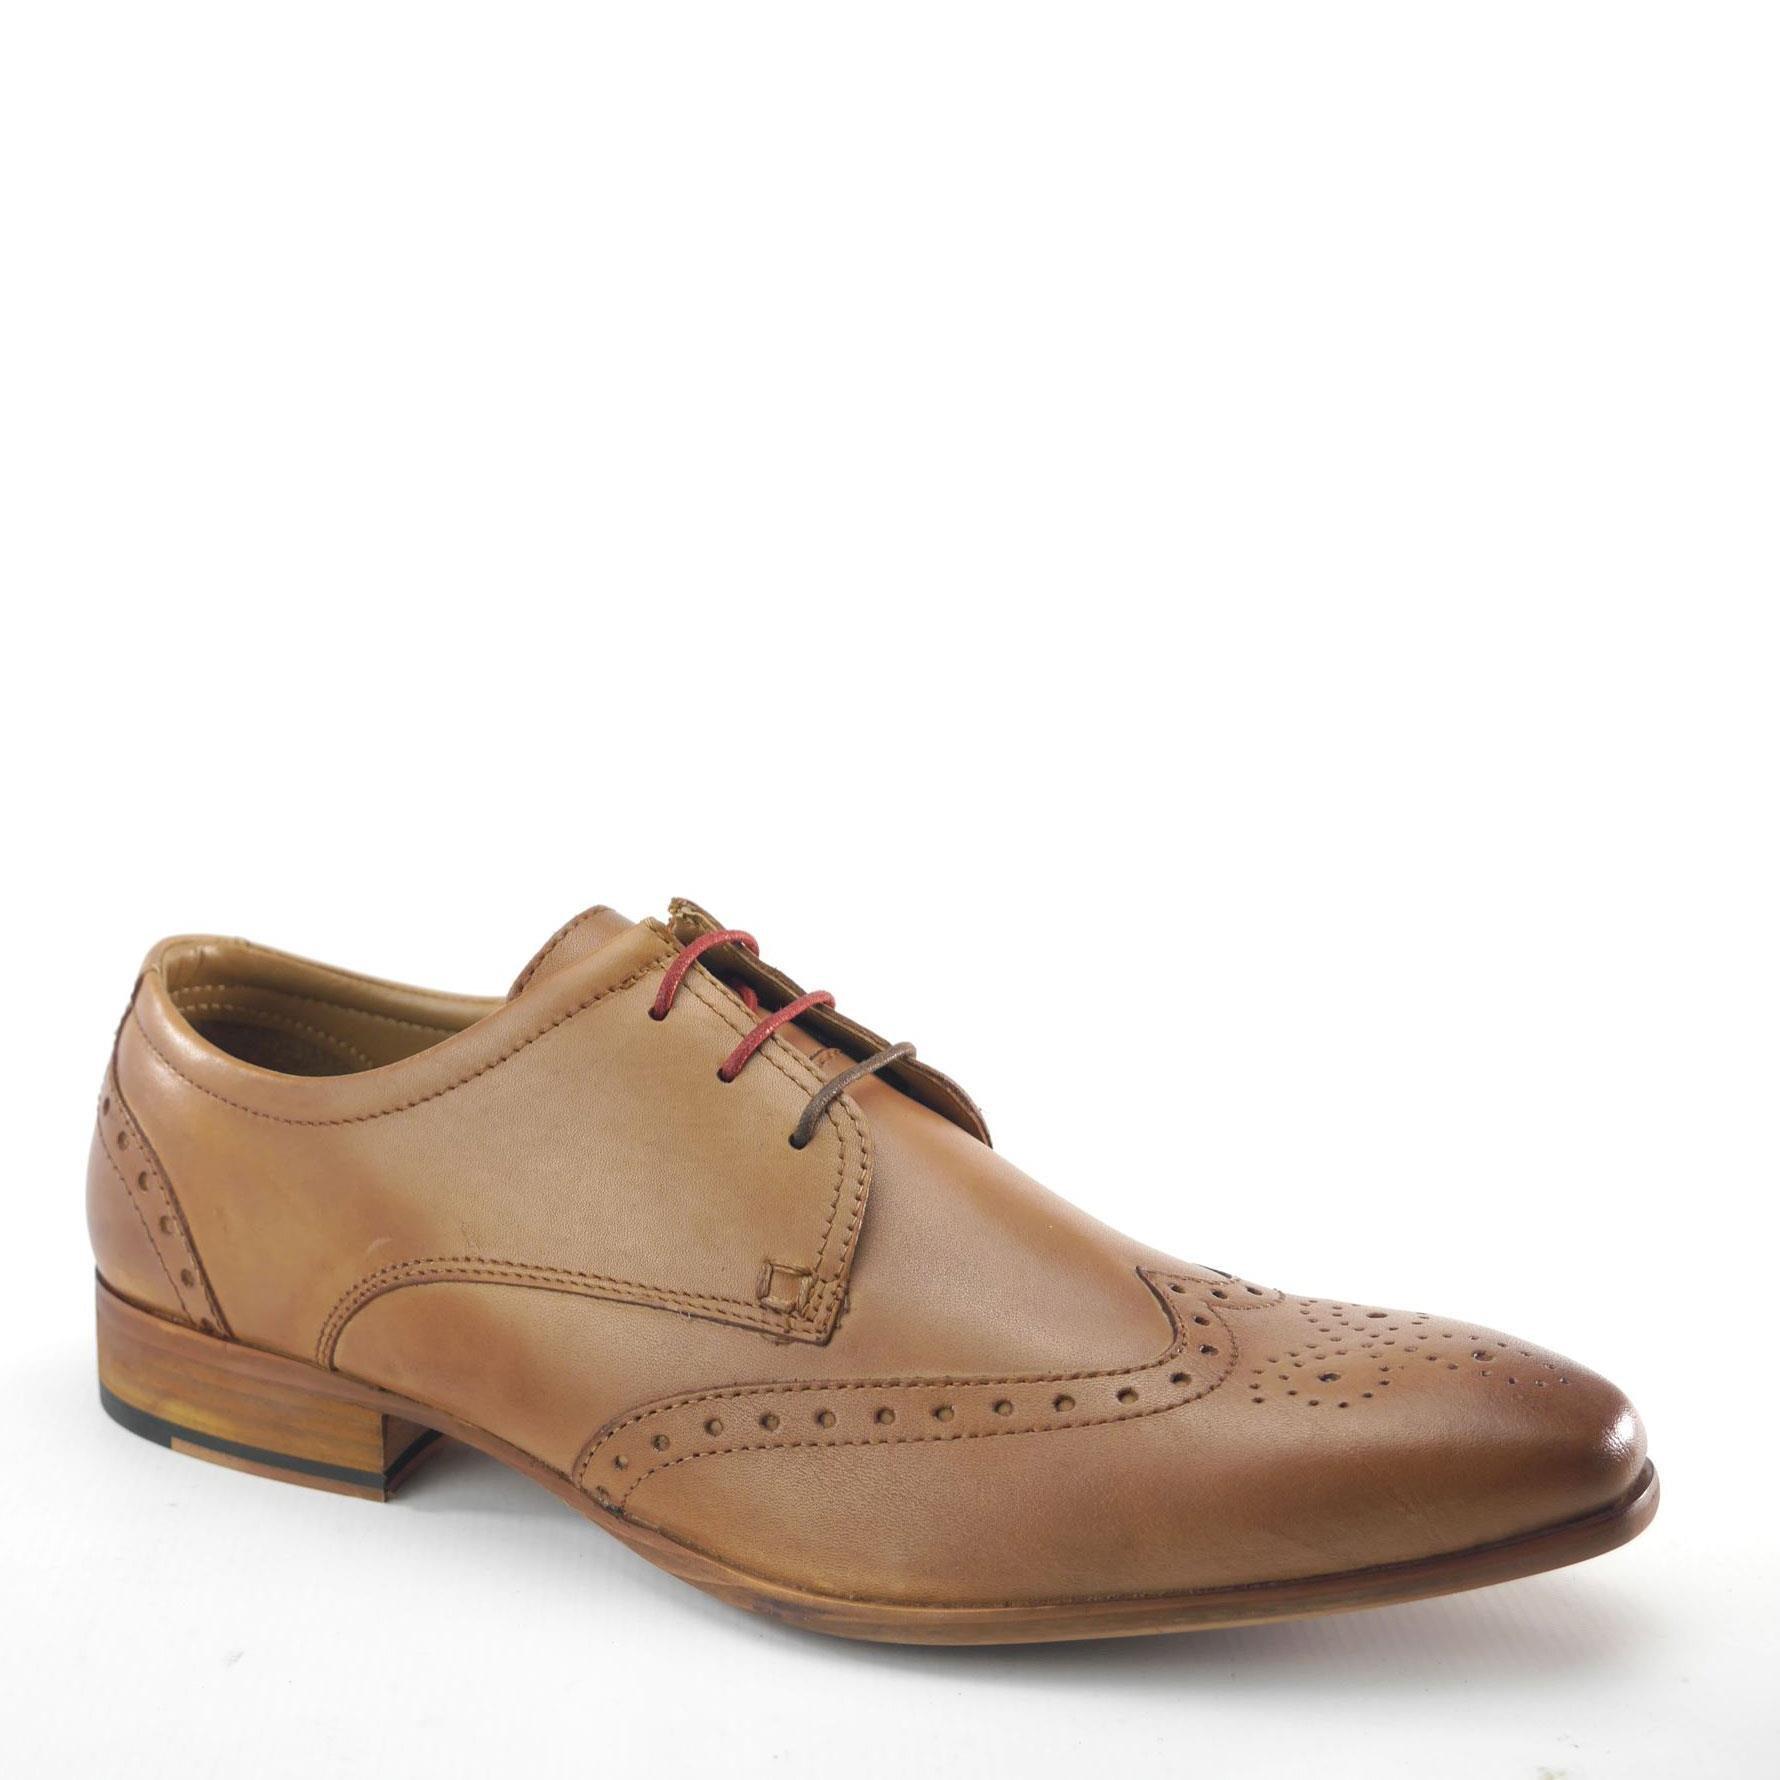 Кожаные туфли-броги Clapham Frank James, коричневый кожаные формальные туфли броги harlow с острым носком frank james коричневый